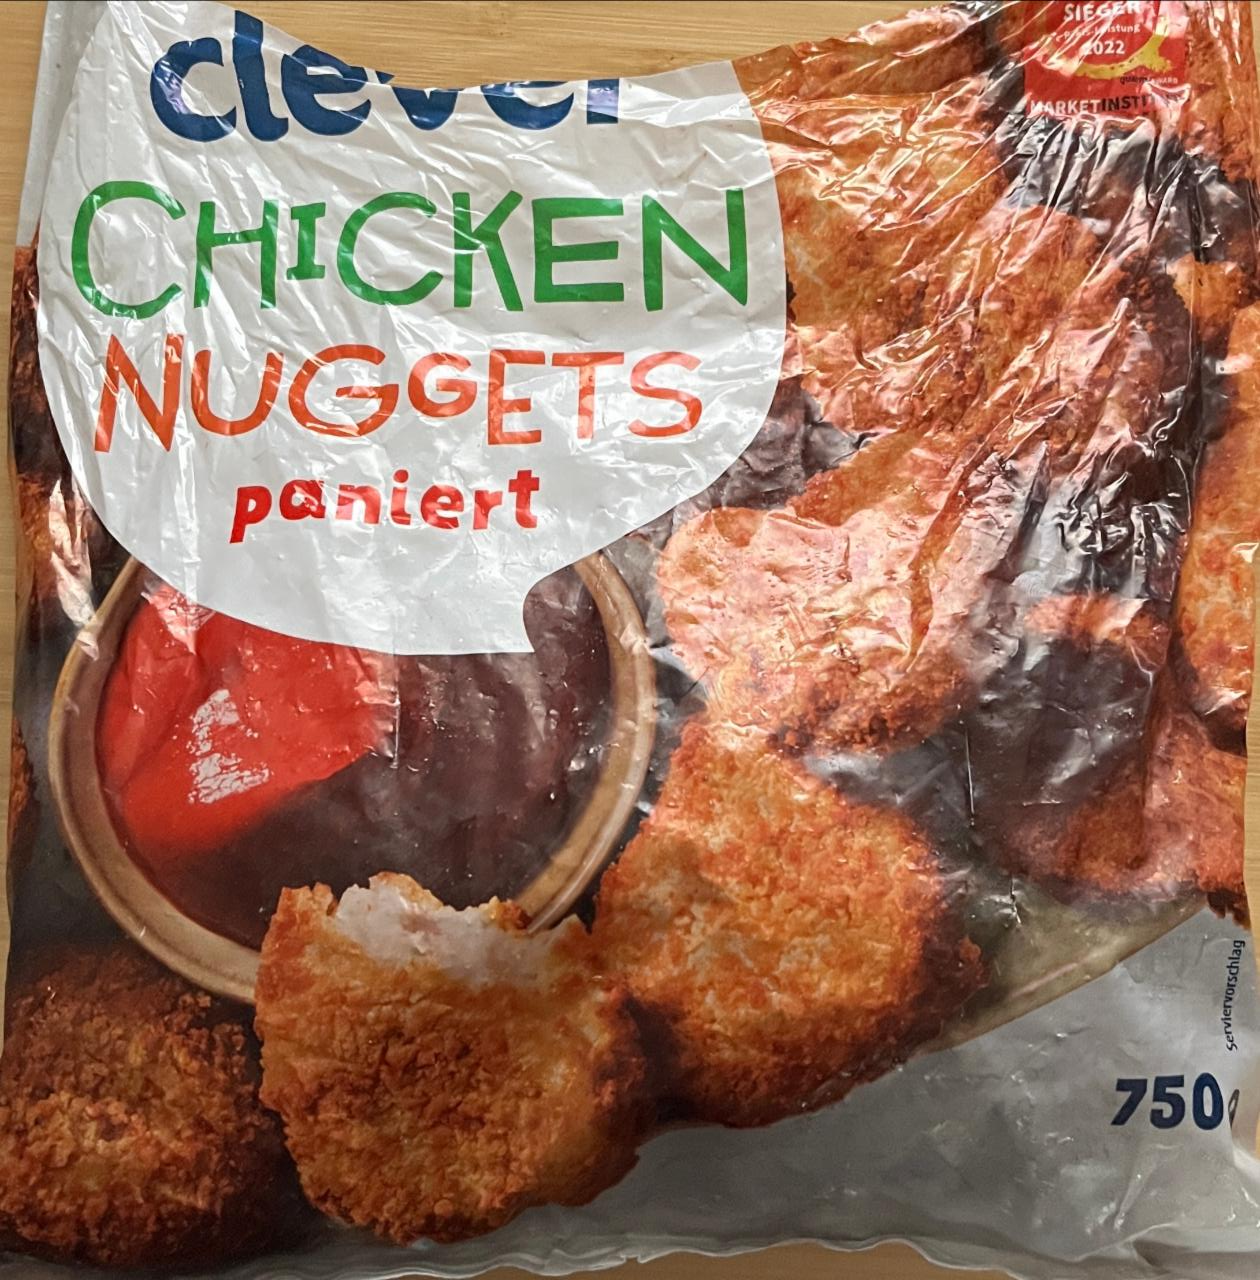 Fotografie - Chicken nuggets paniert Clever